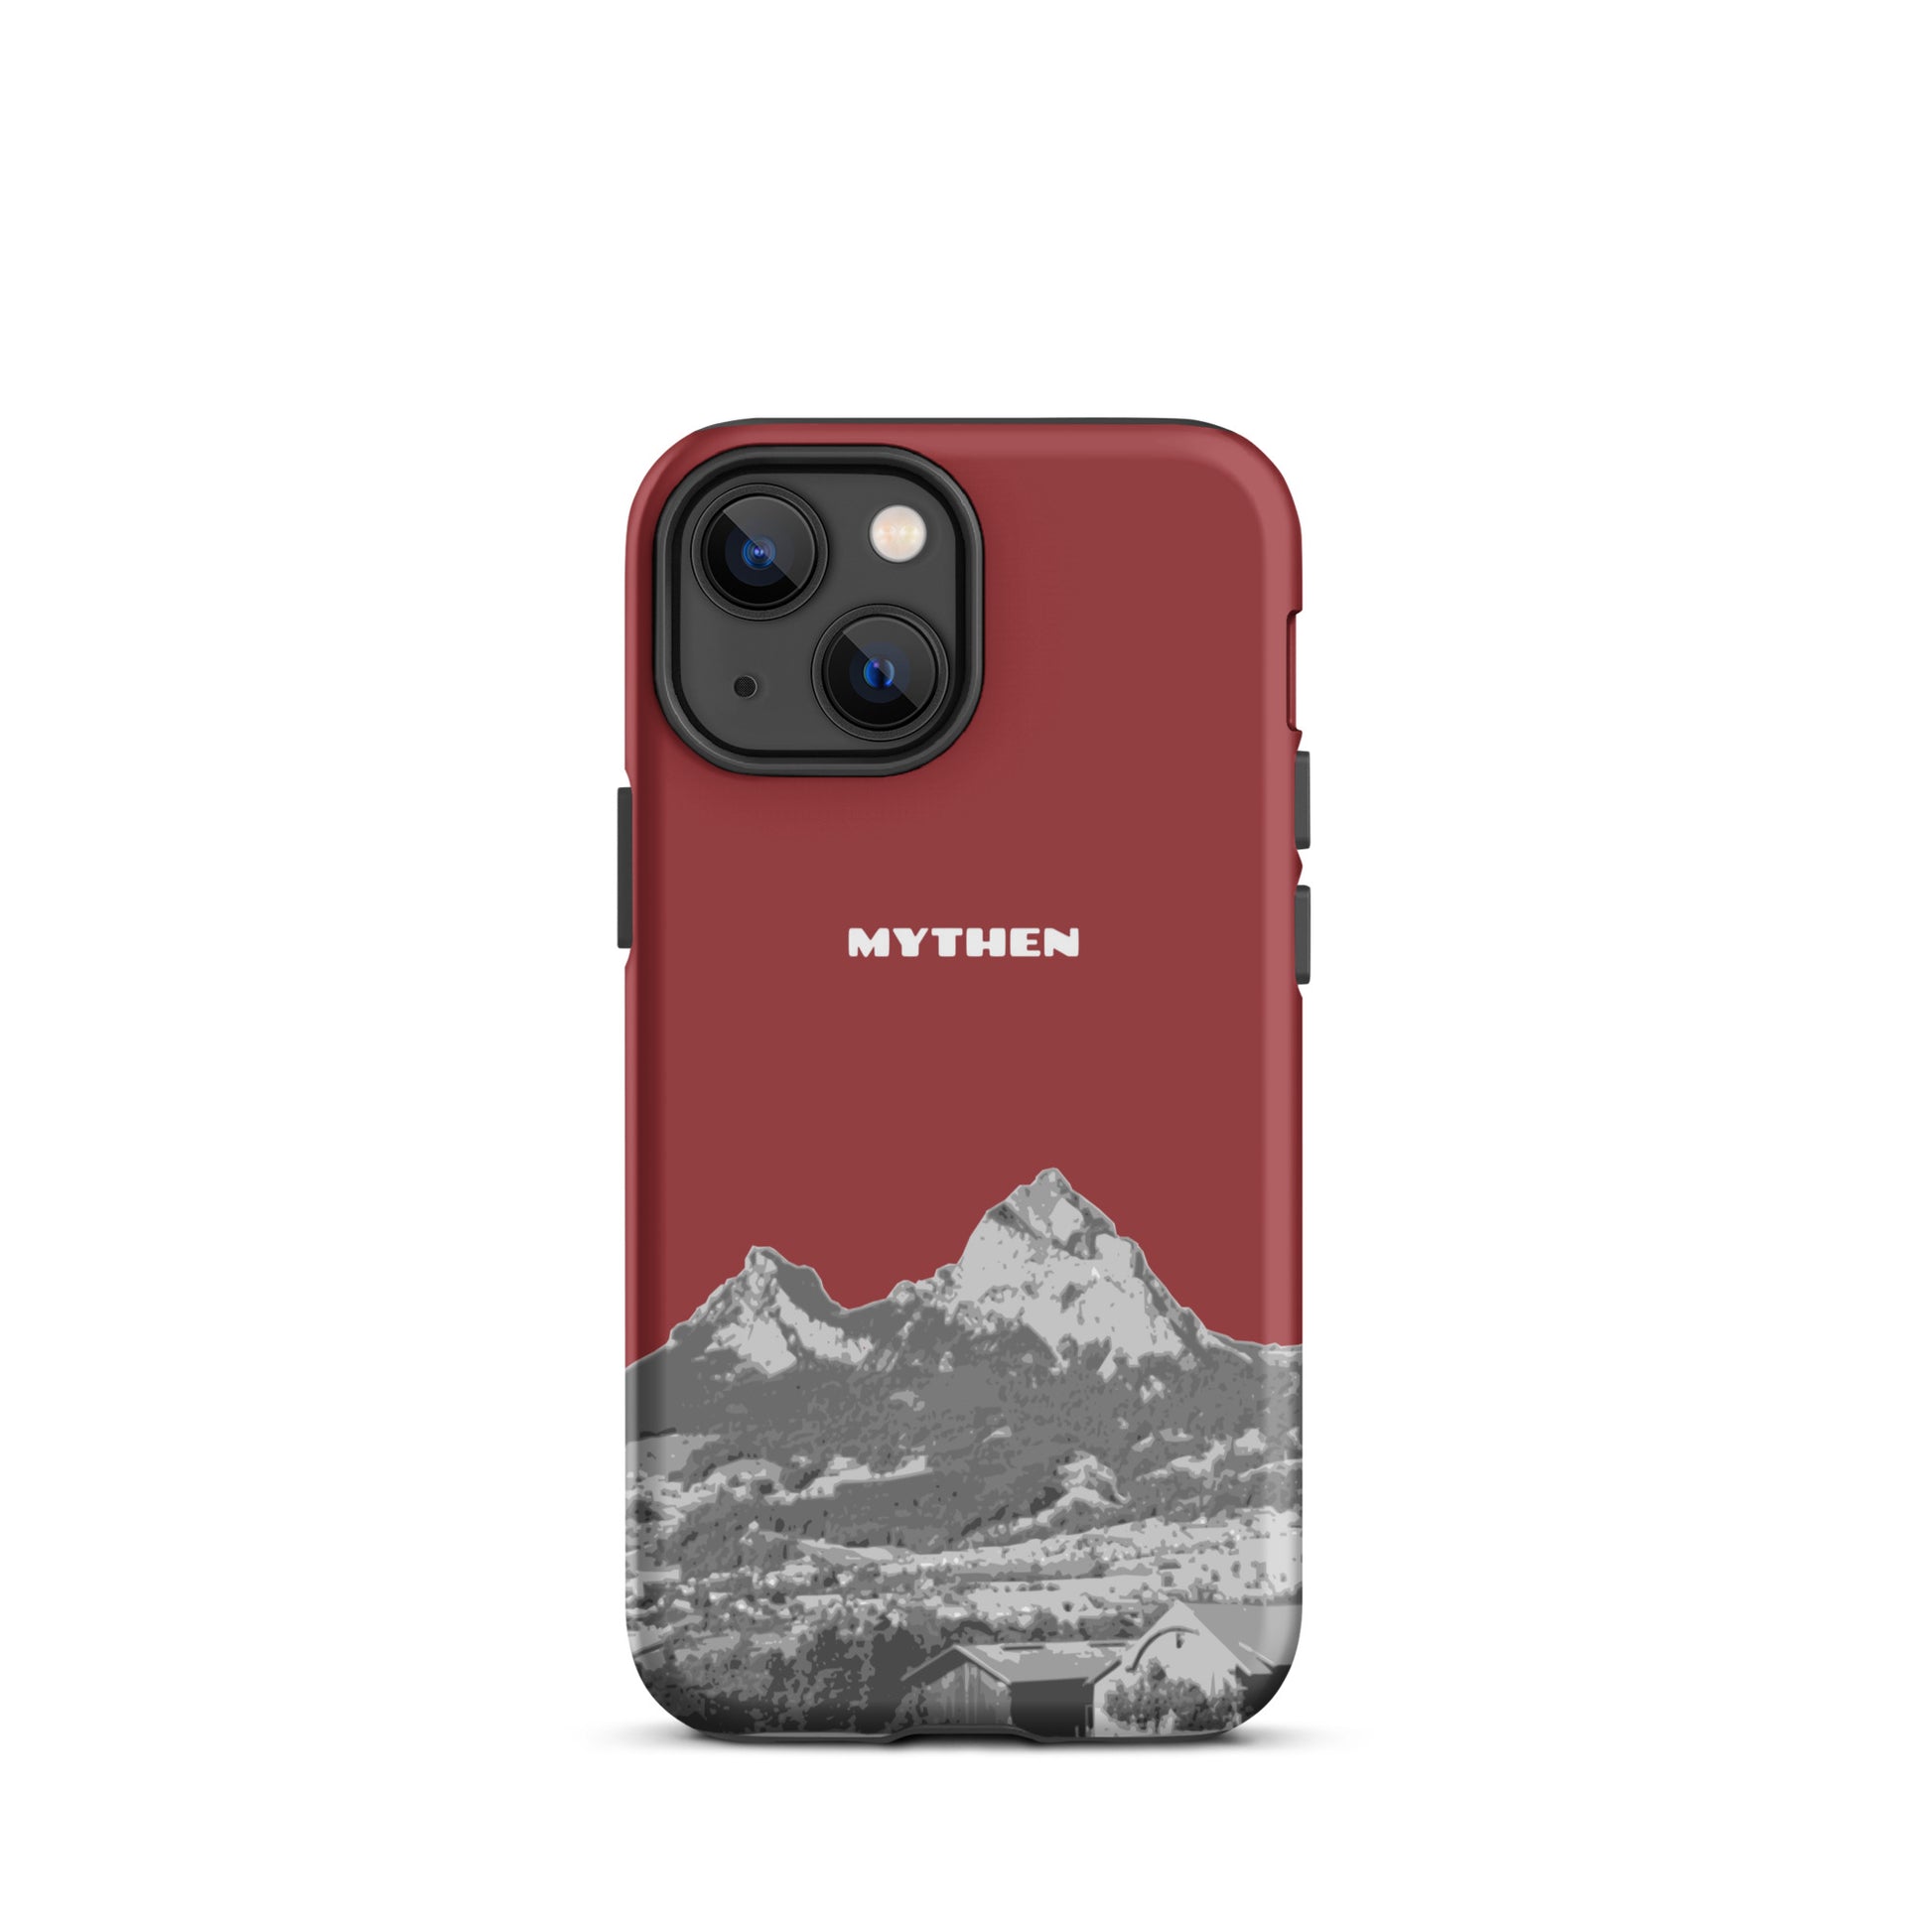 Hülle für das iPhone 13 mini von Apple in der Farbe Rot, die den Grossen Mythen und den Kleinen Mythen bei Schwyz zeigt. 